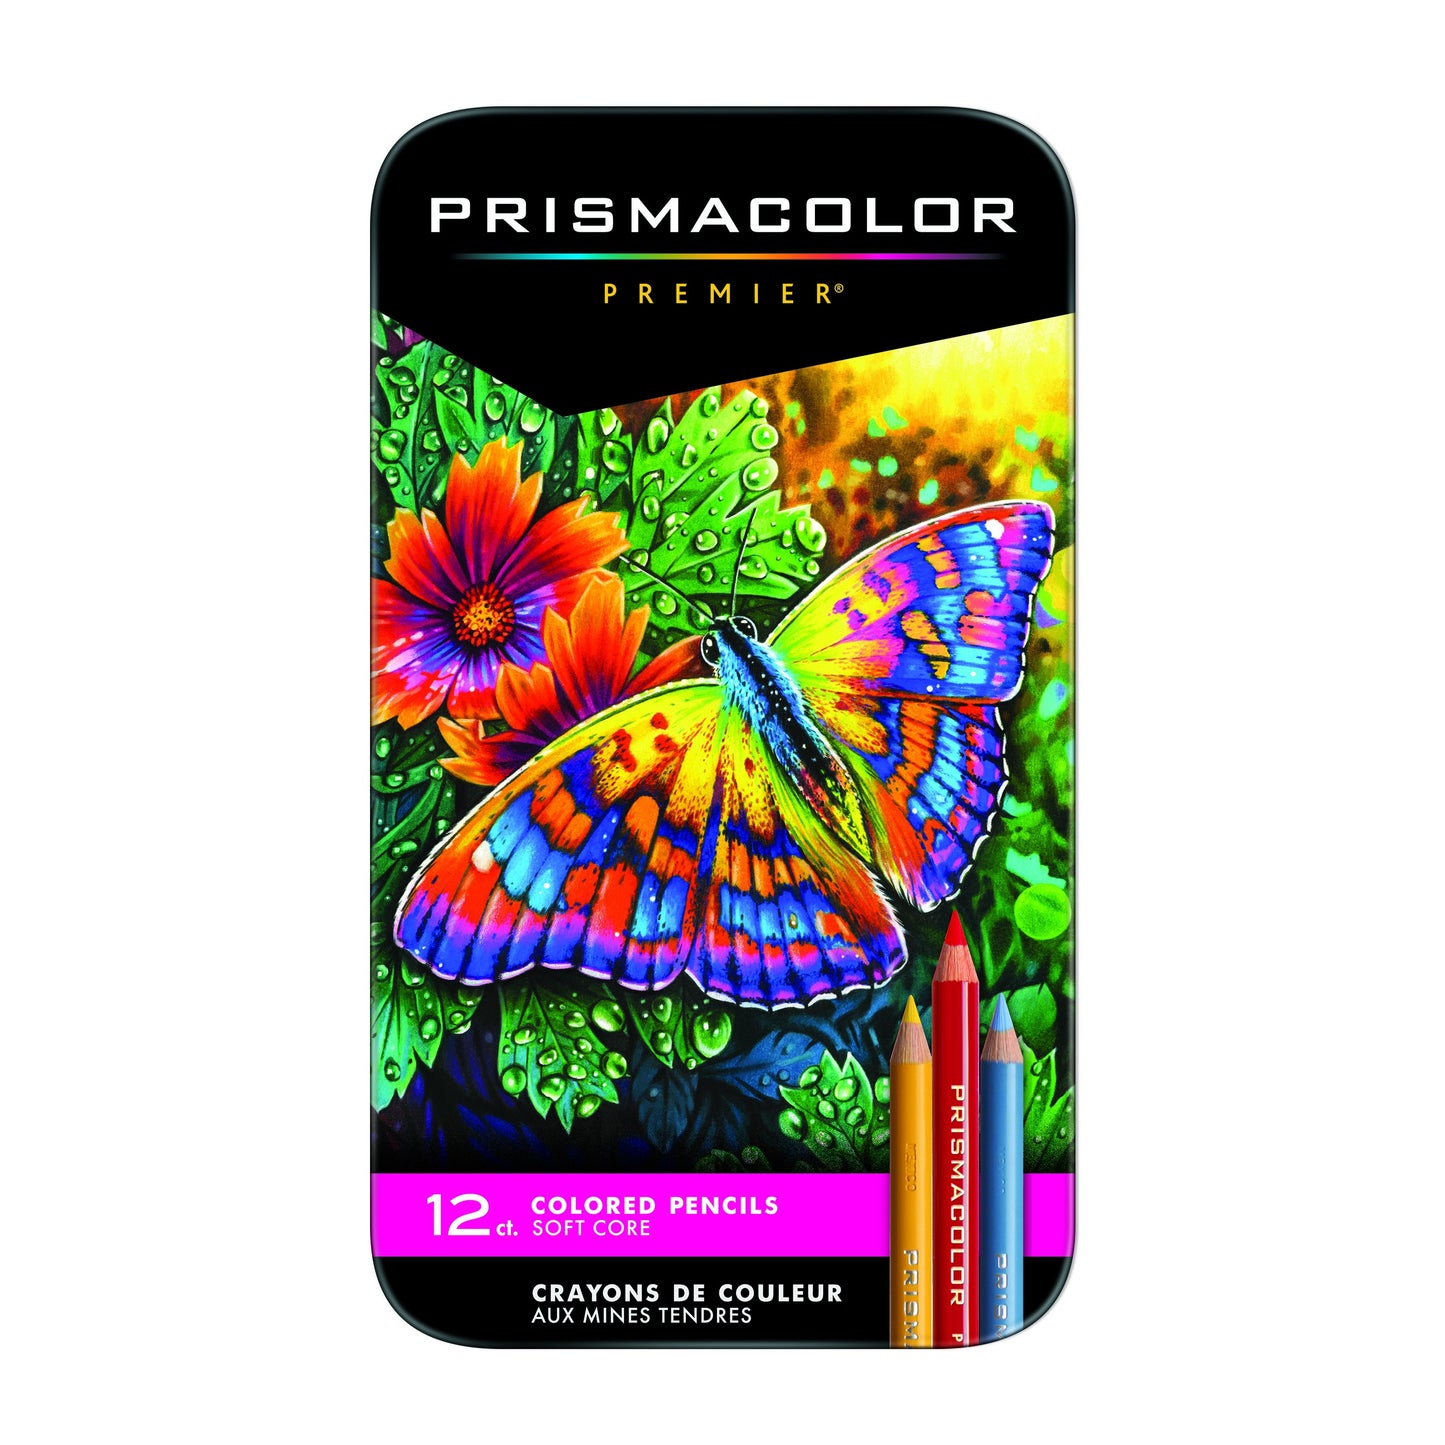 Prismacolor Premier Colored Pencil Sets Set of 48